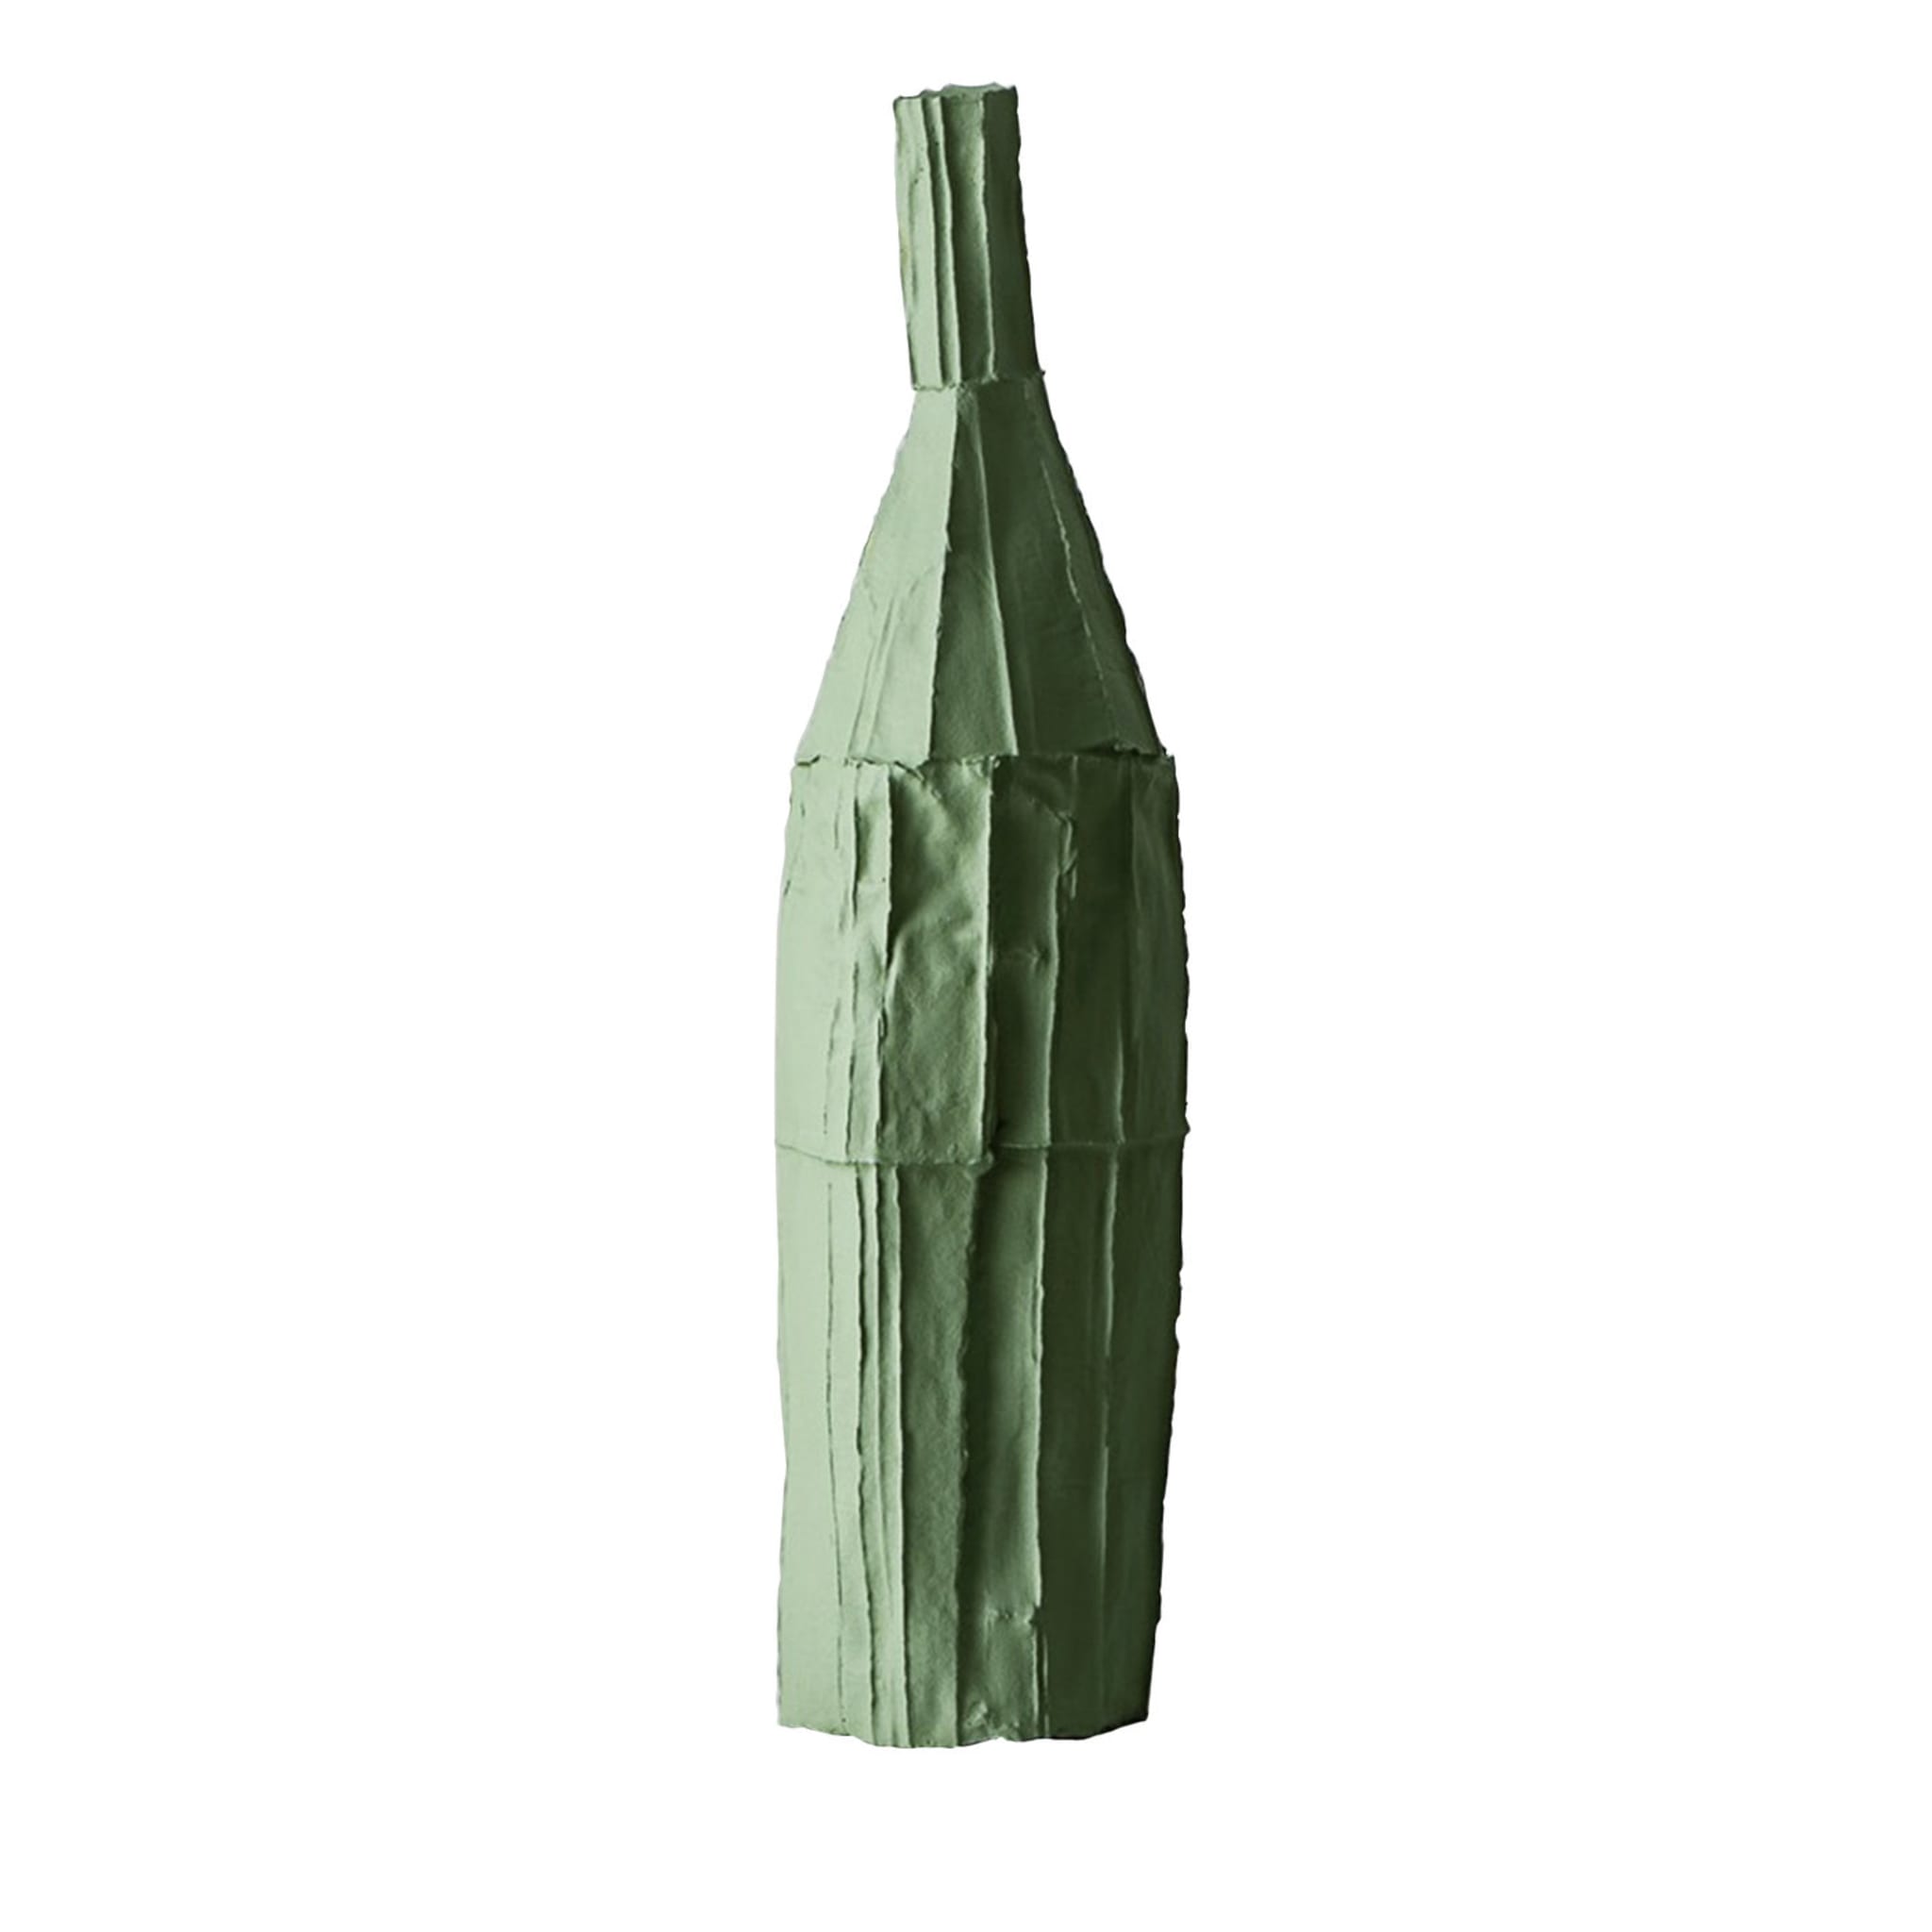 Cartocci Corteccia Botella Decorativa Verde - Vista principal